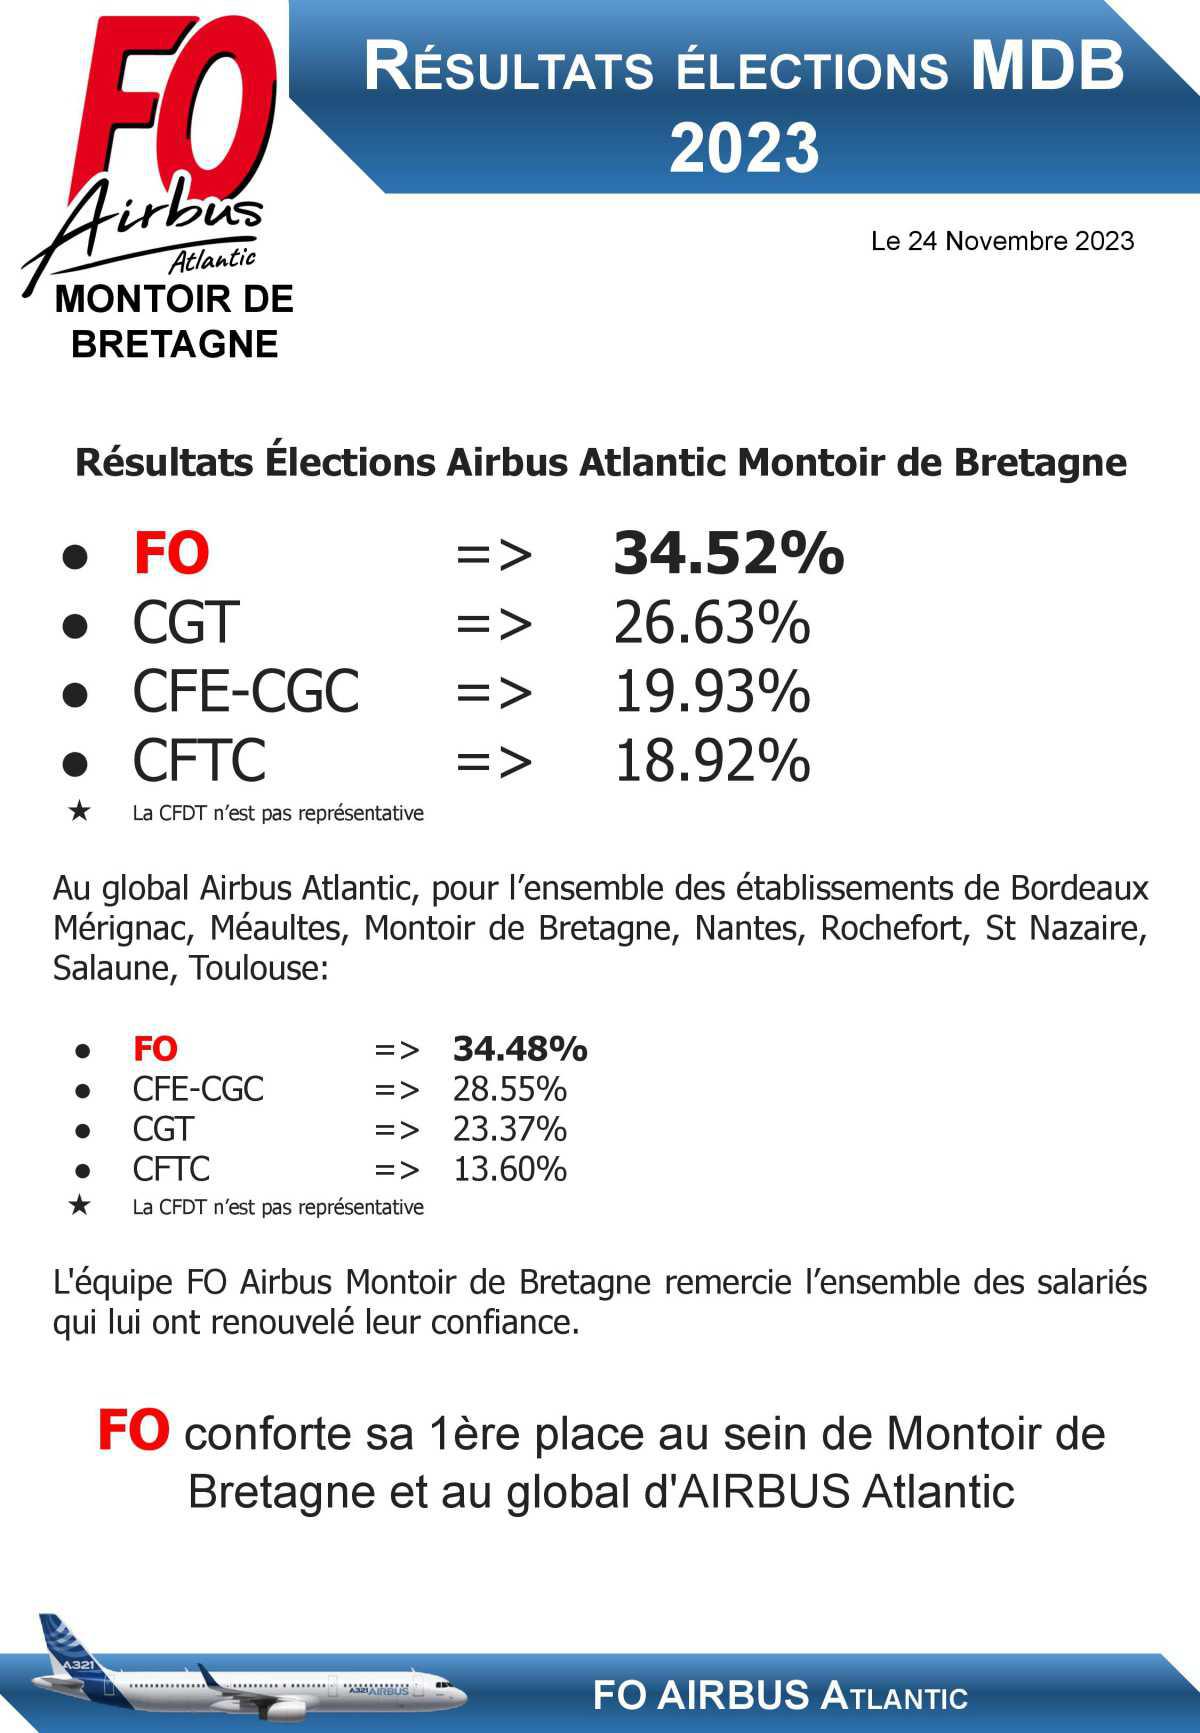 Résultats des élections Airbus Atlantic Montoir de Bretagne